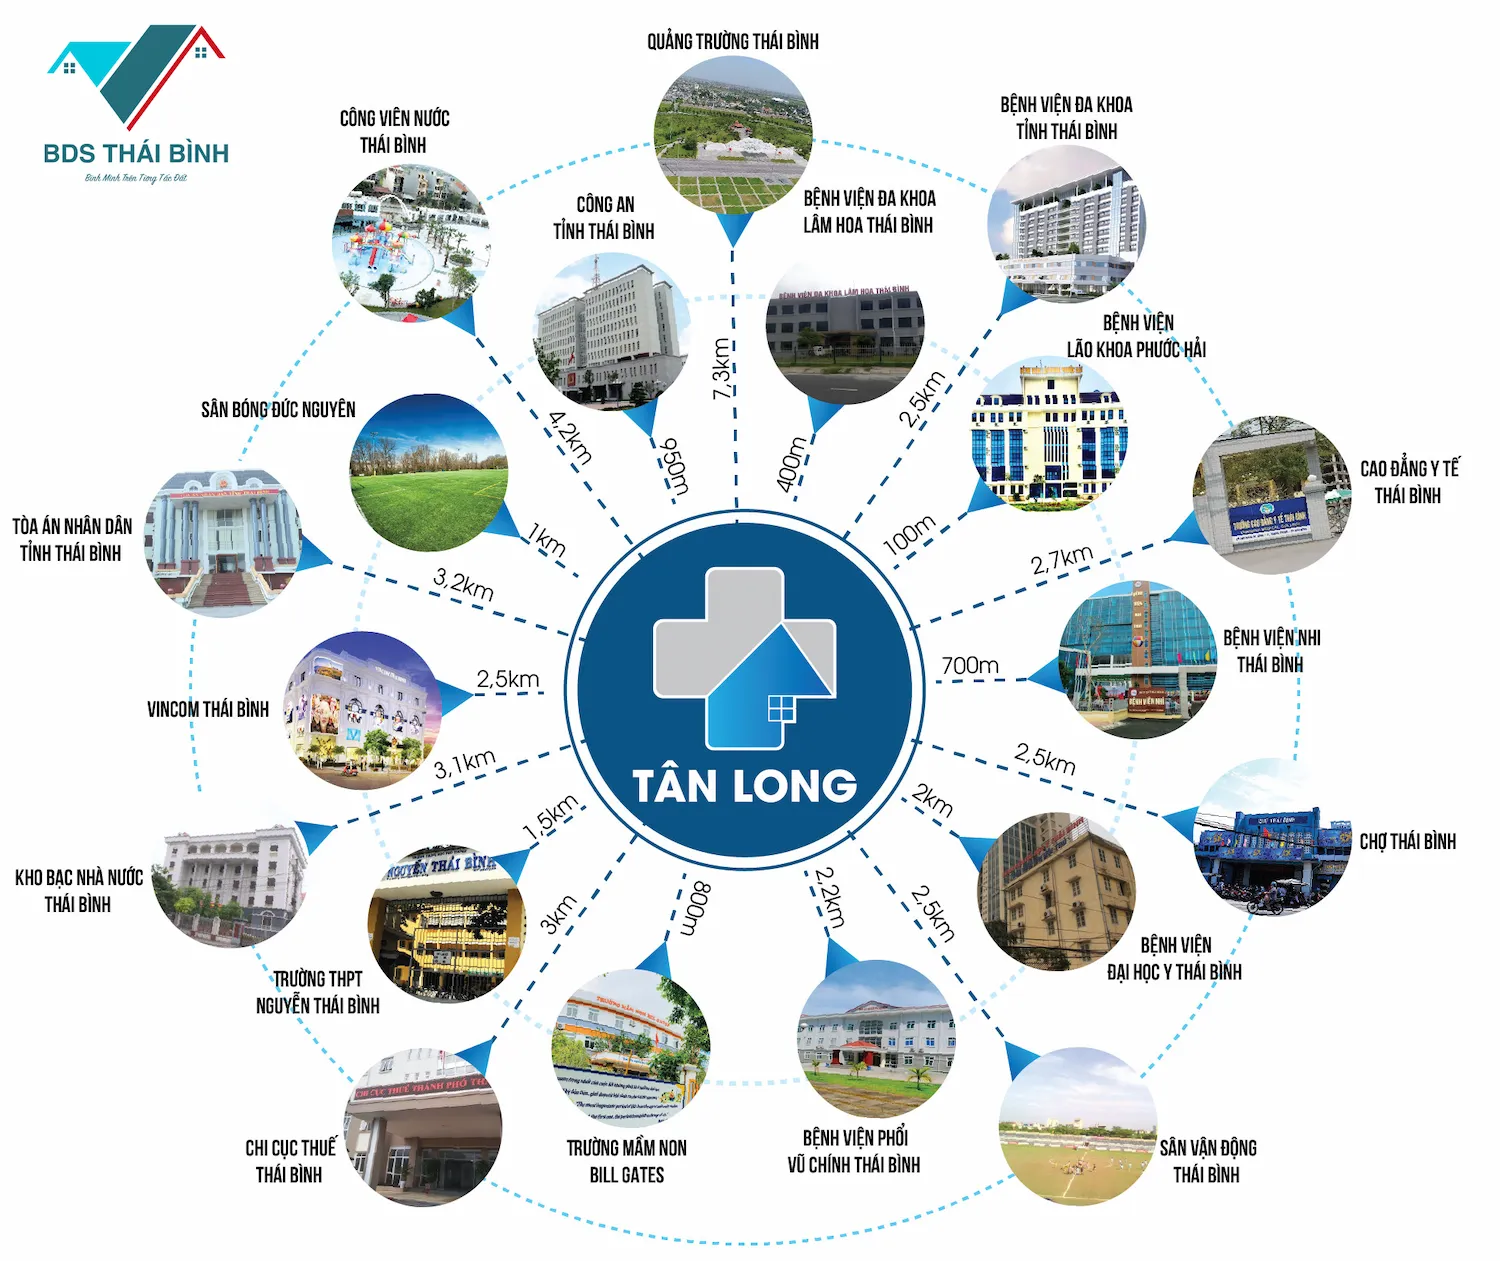 Liên kết vùng Khu dịch vụ trung tâm y tế Tân Long TP Thái Bình